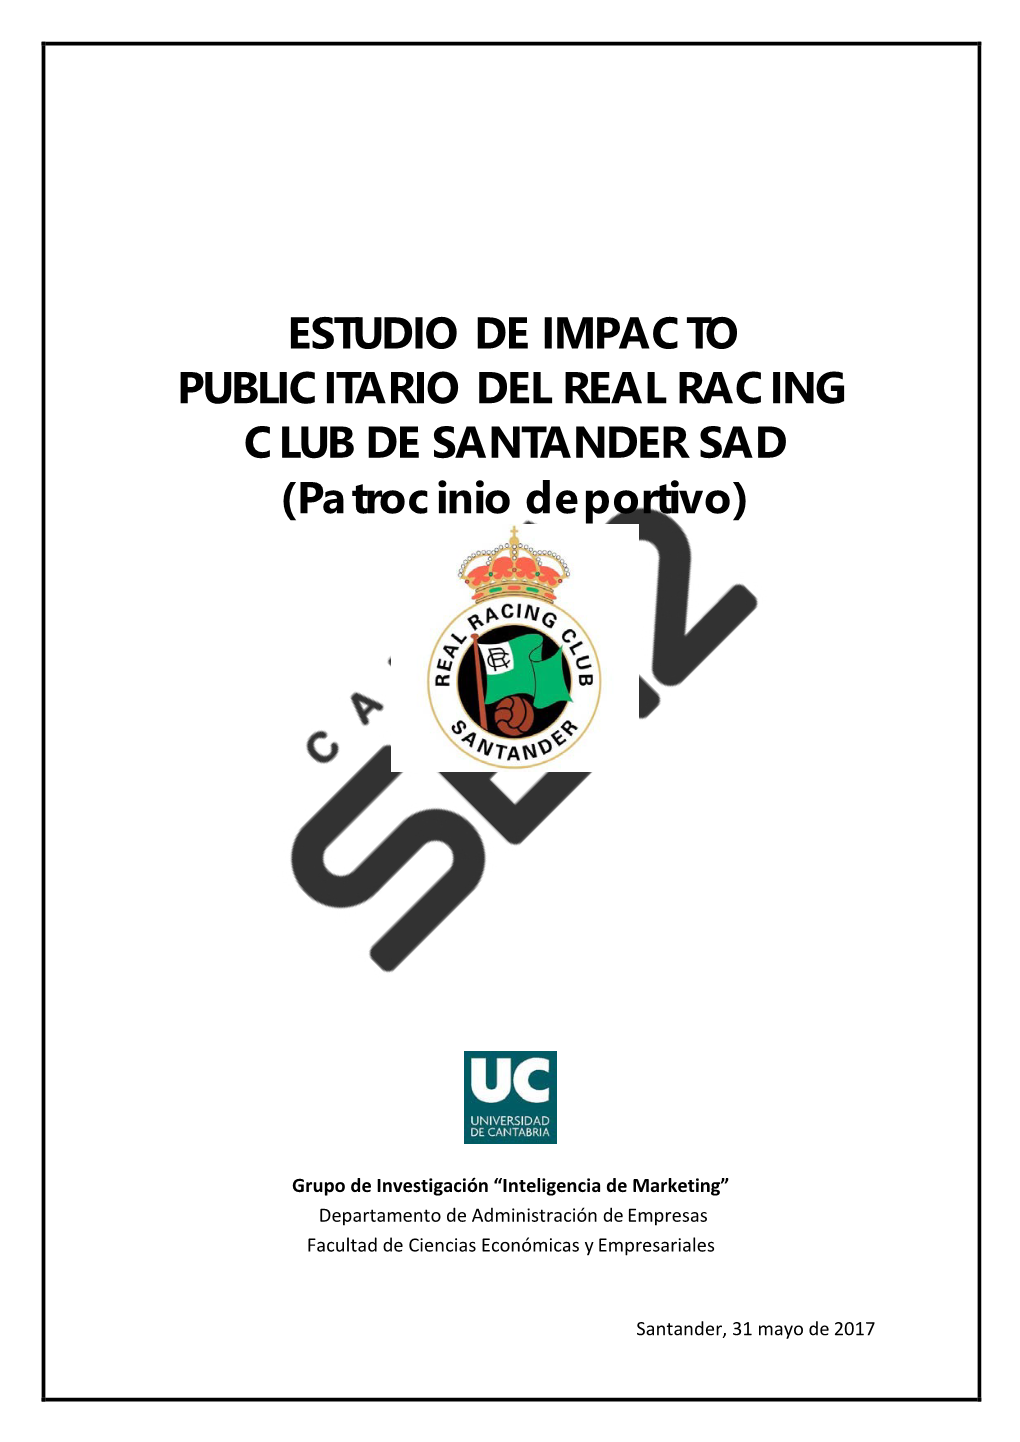 ESTUDIO DE IMPACTO PUBLICITARIO DEL REAL RACING CLUB DE SANTANDER SAD (Patrocinio Deportivo)